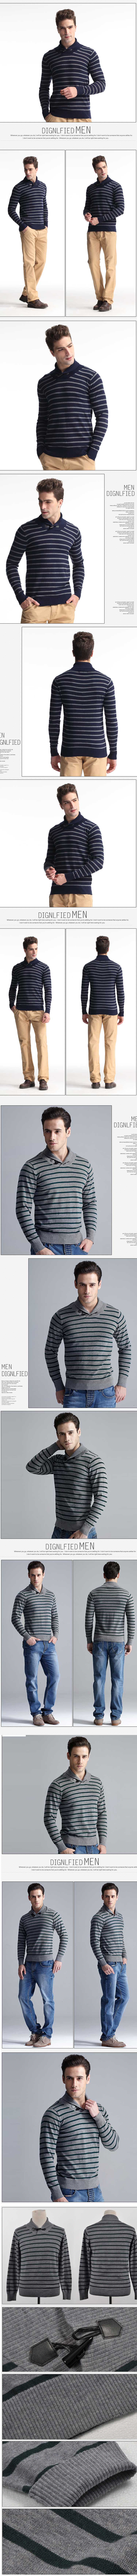 jual sweater rajut pria model turtleneck, terbuat dari bahan rajut yang berkualitas sehingga nyaman dipakai, temukan koleksi sweater rajut pria turtleneck lain nya disini